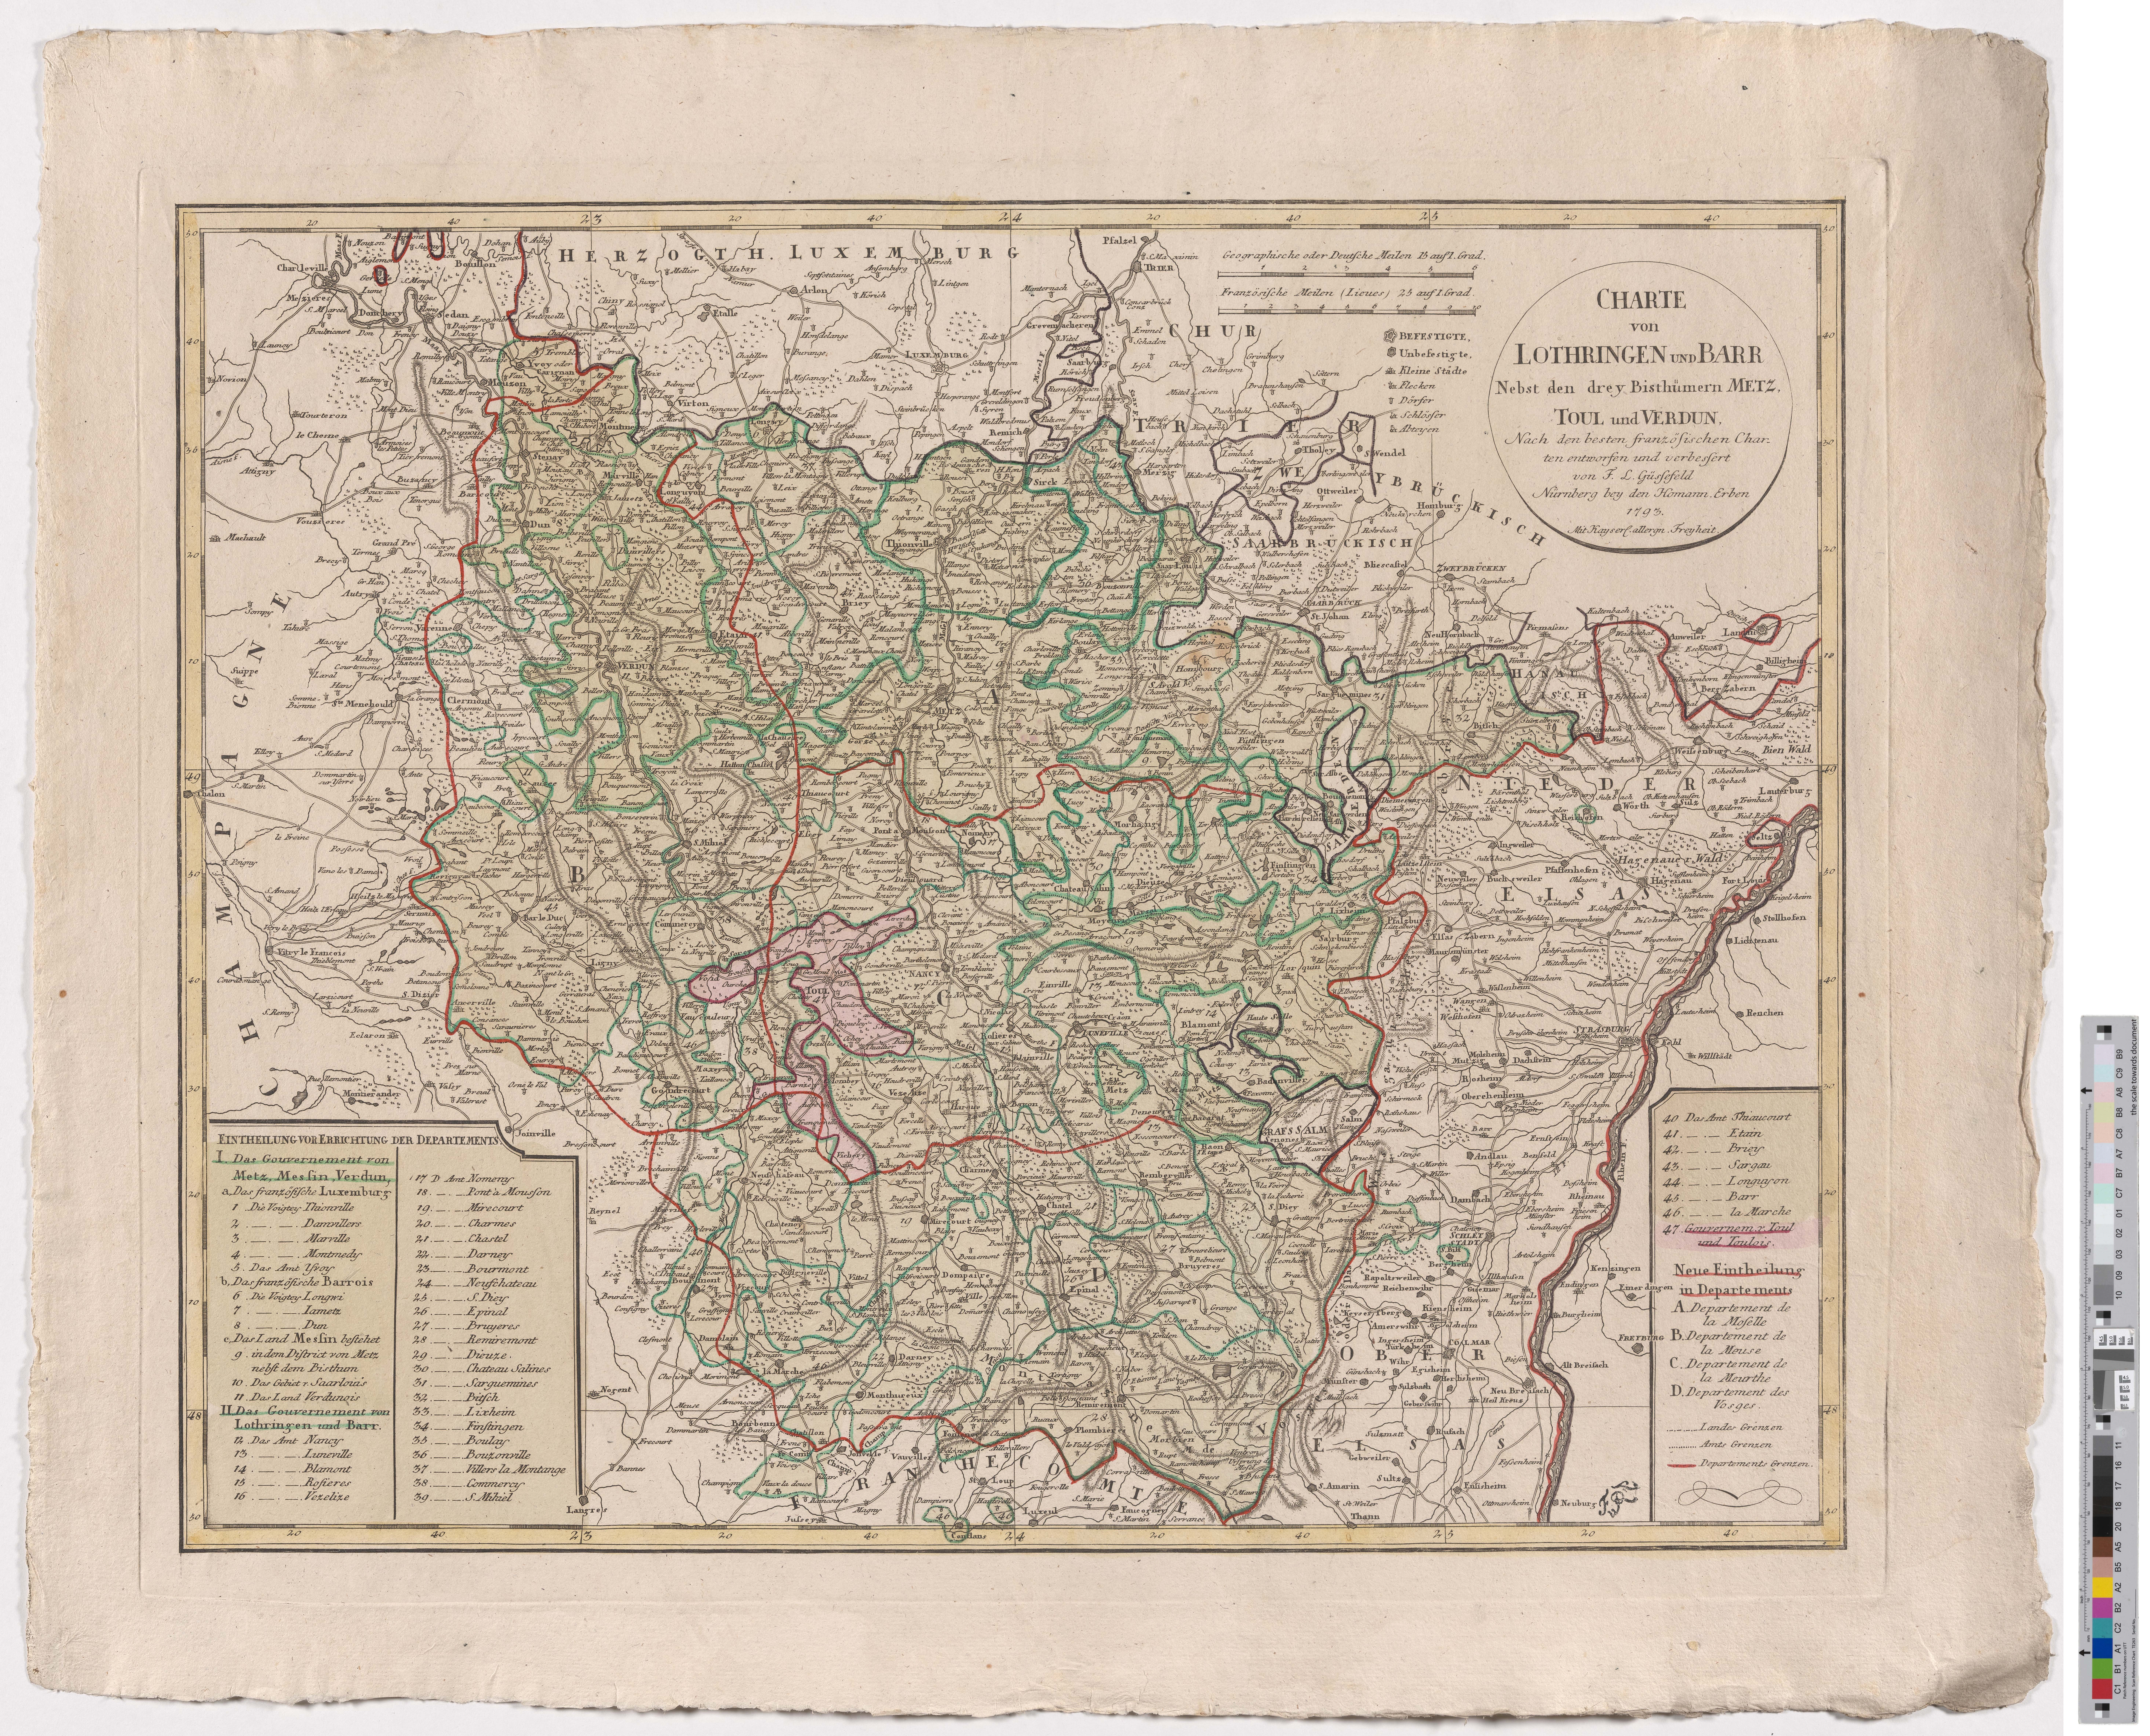 Landkarte "Charte von Lothringen und Barr Nebst den drey Bistümern Metz, Toul und Verdun." (Kreismuseum Grimma RR-F)